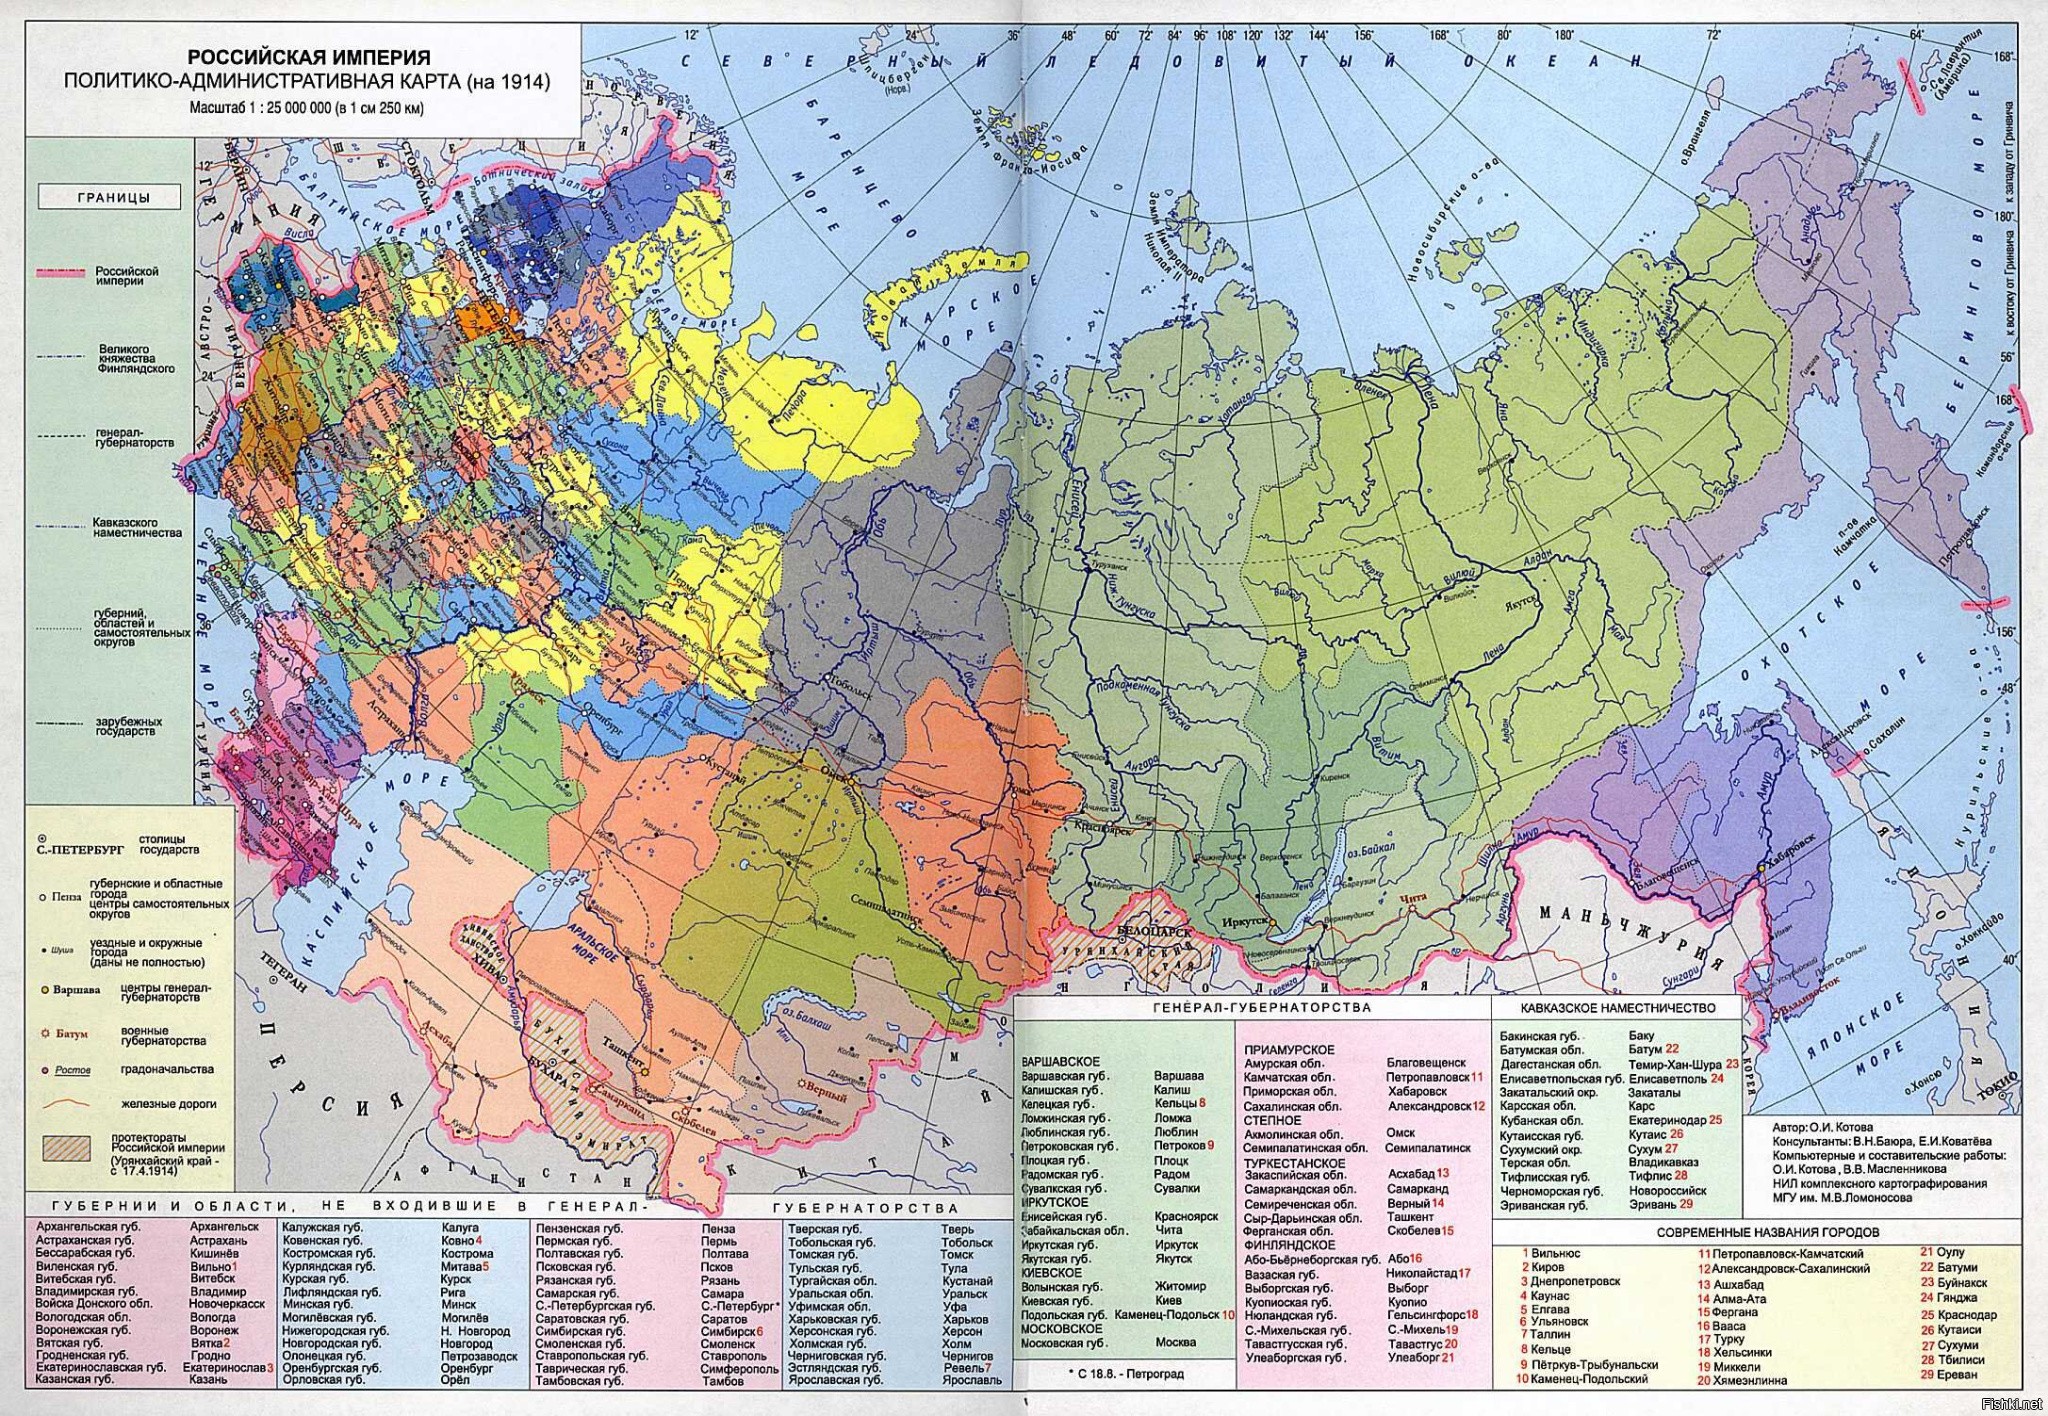 Карта Российской империи до 1917